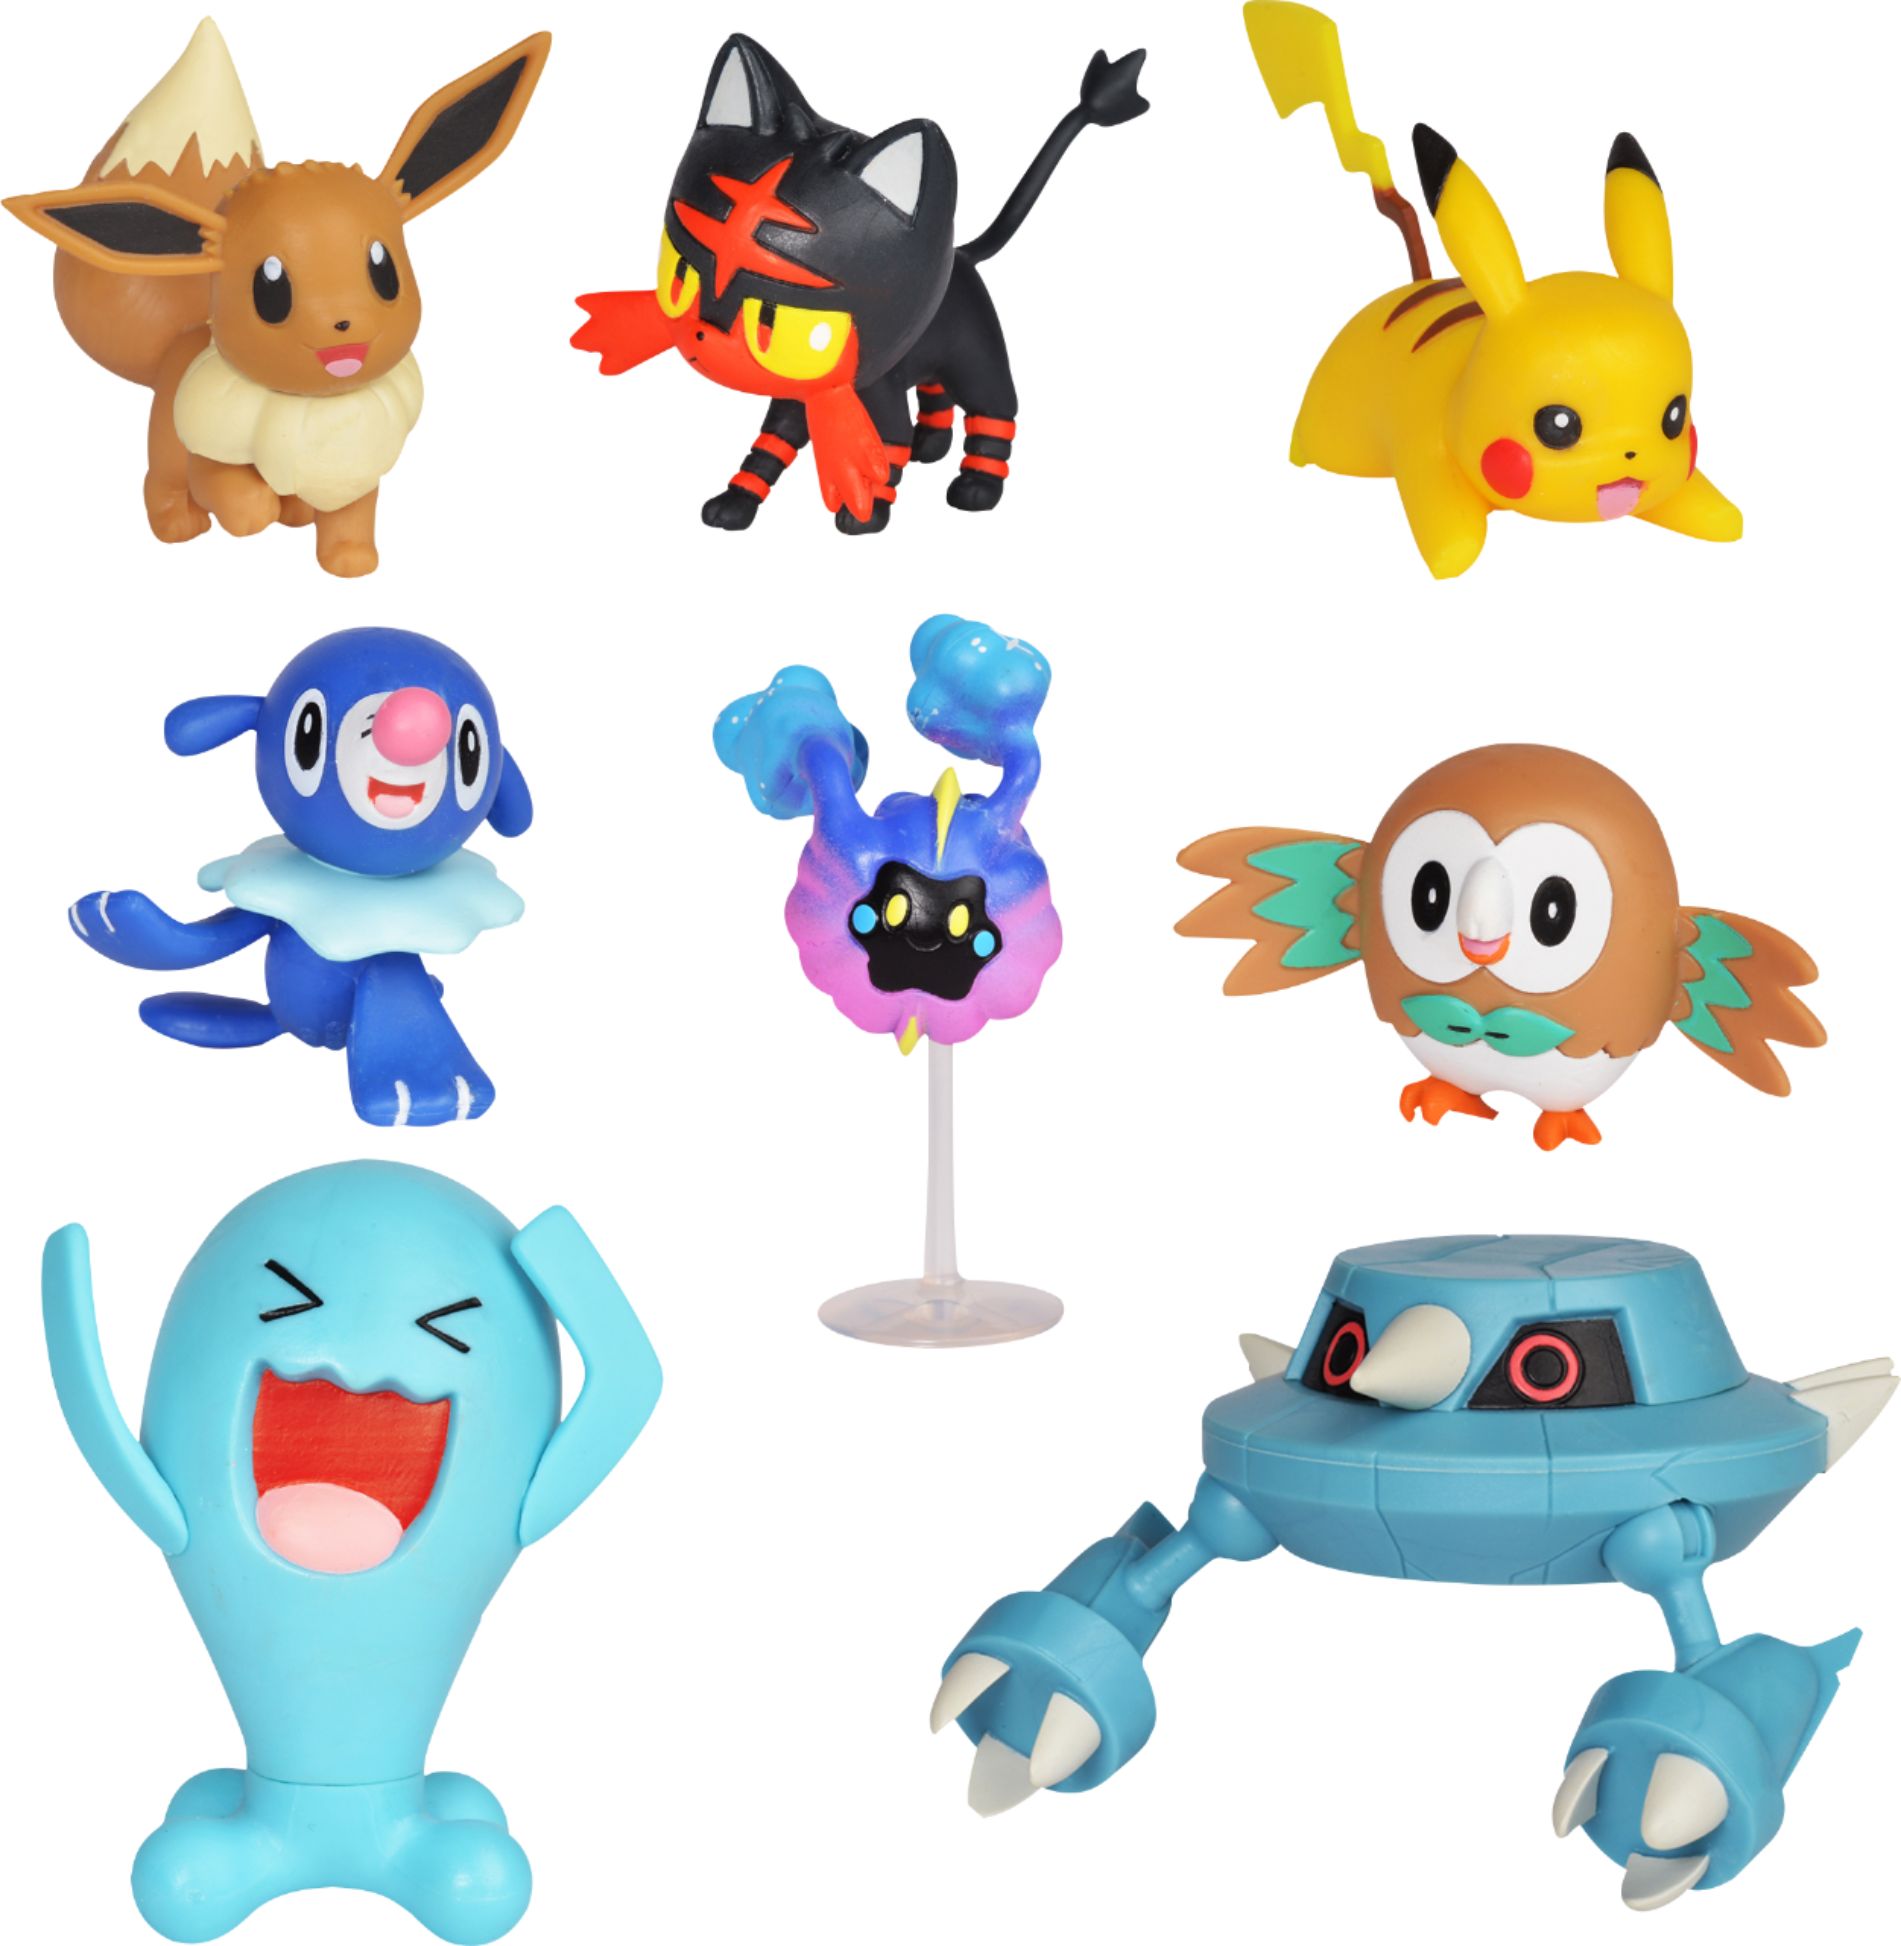 Sélection Battle Feature Figures, Pokémon